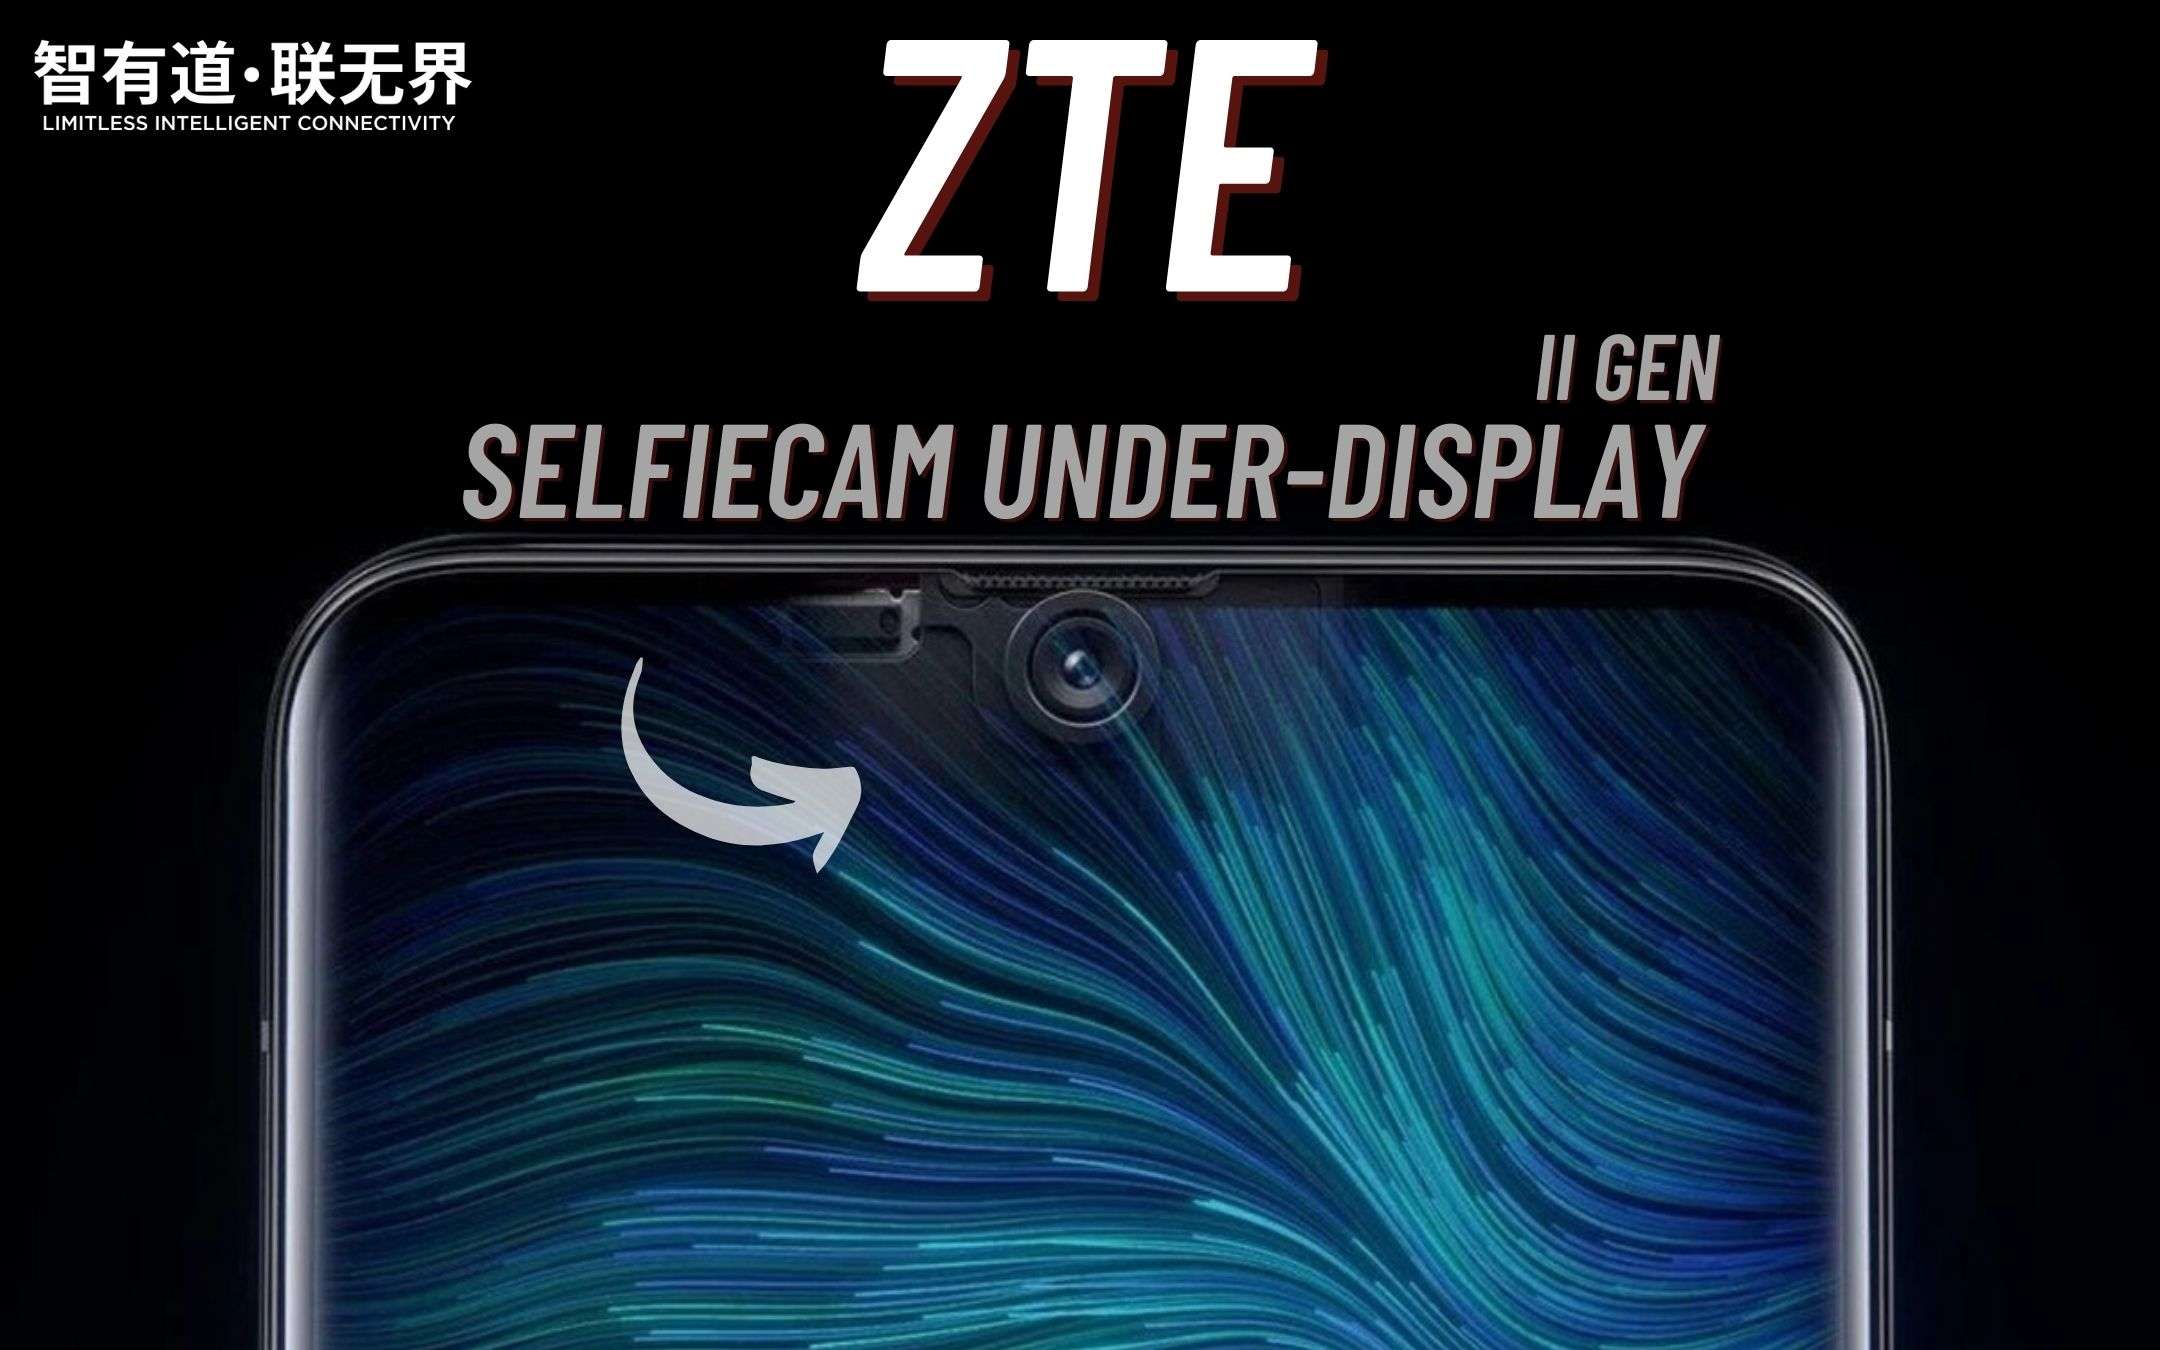 ZTE: ecco la nuova selfiecam UNDER-DISPLAY